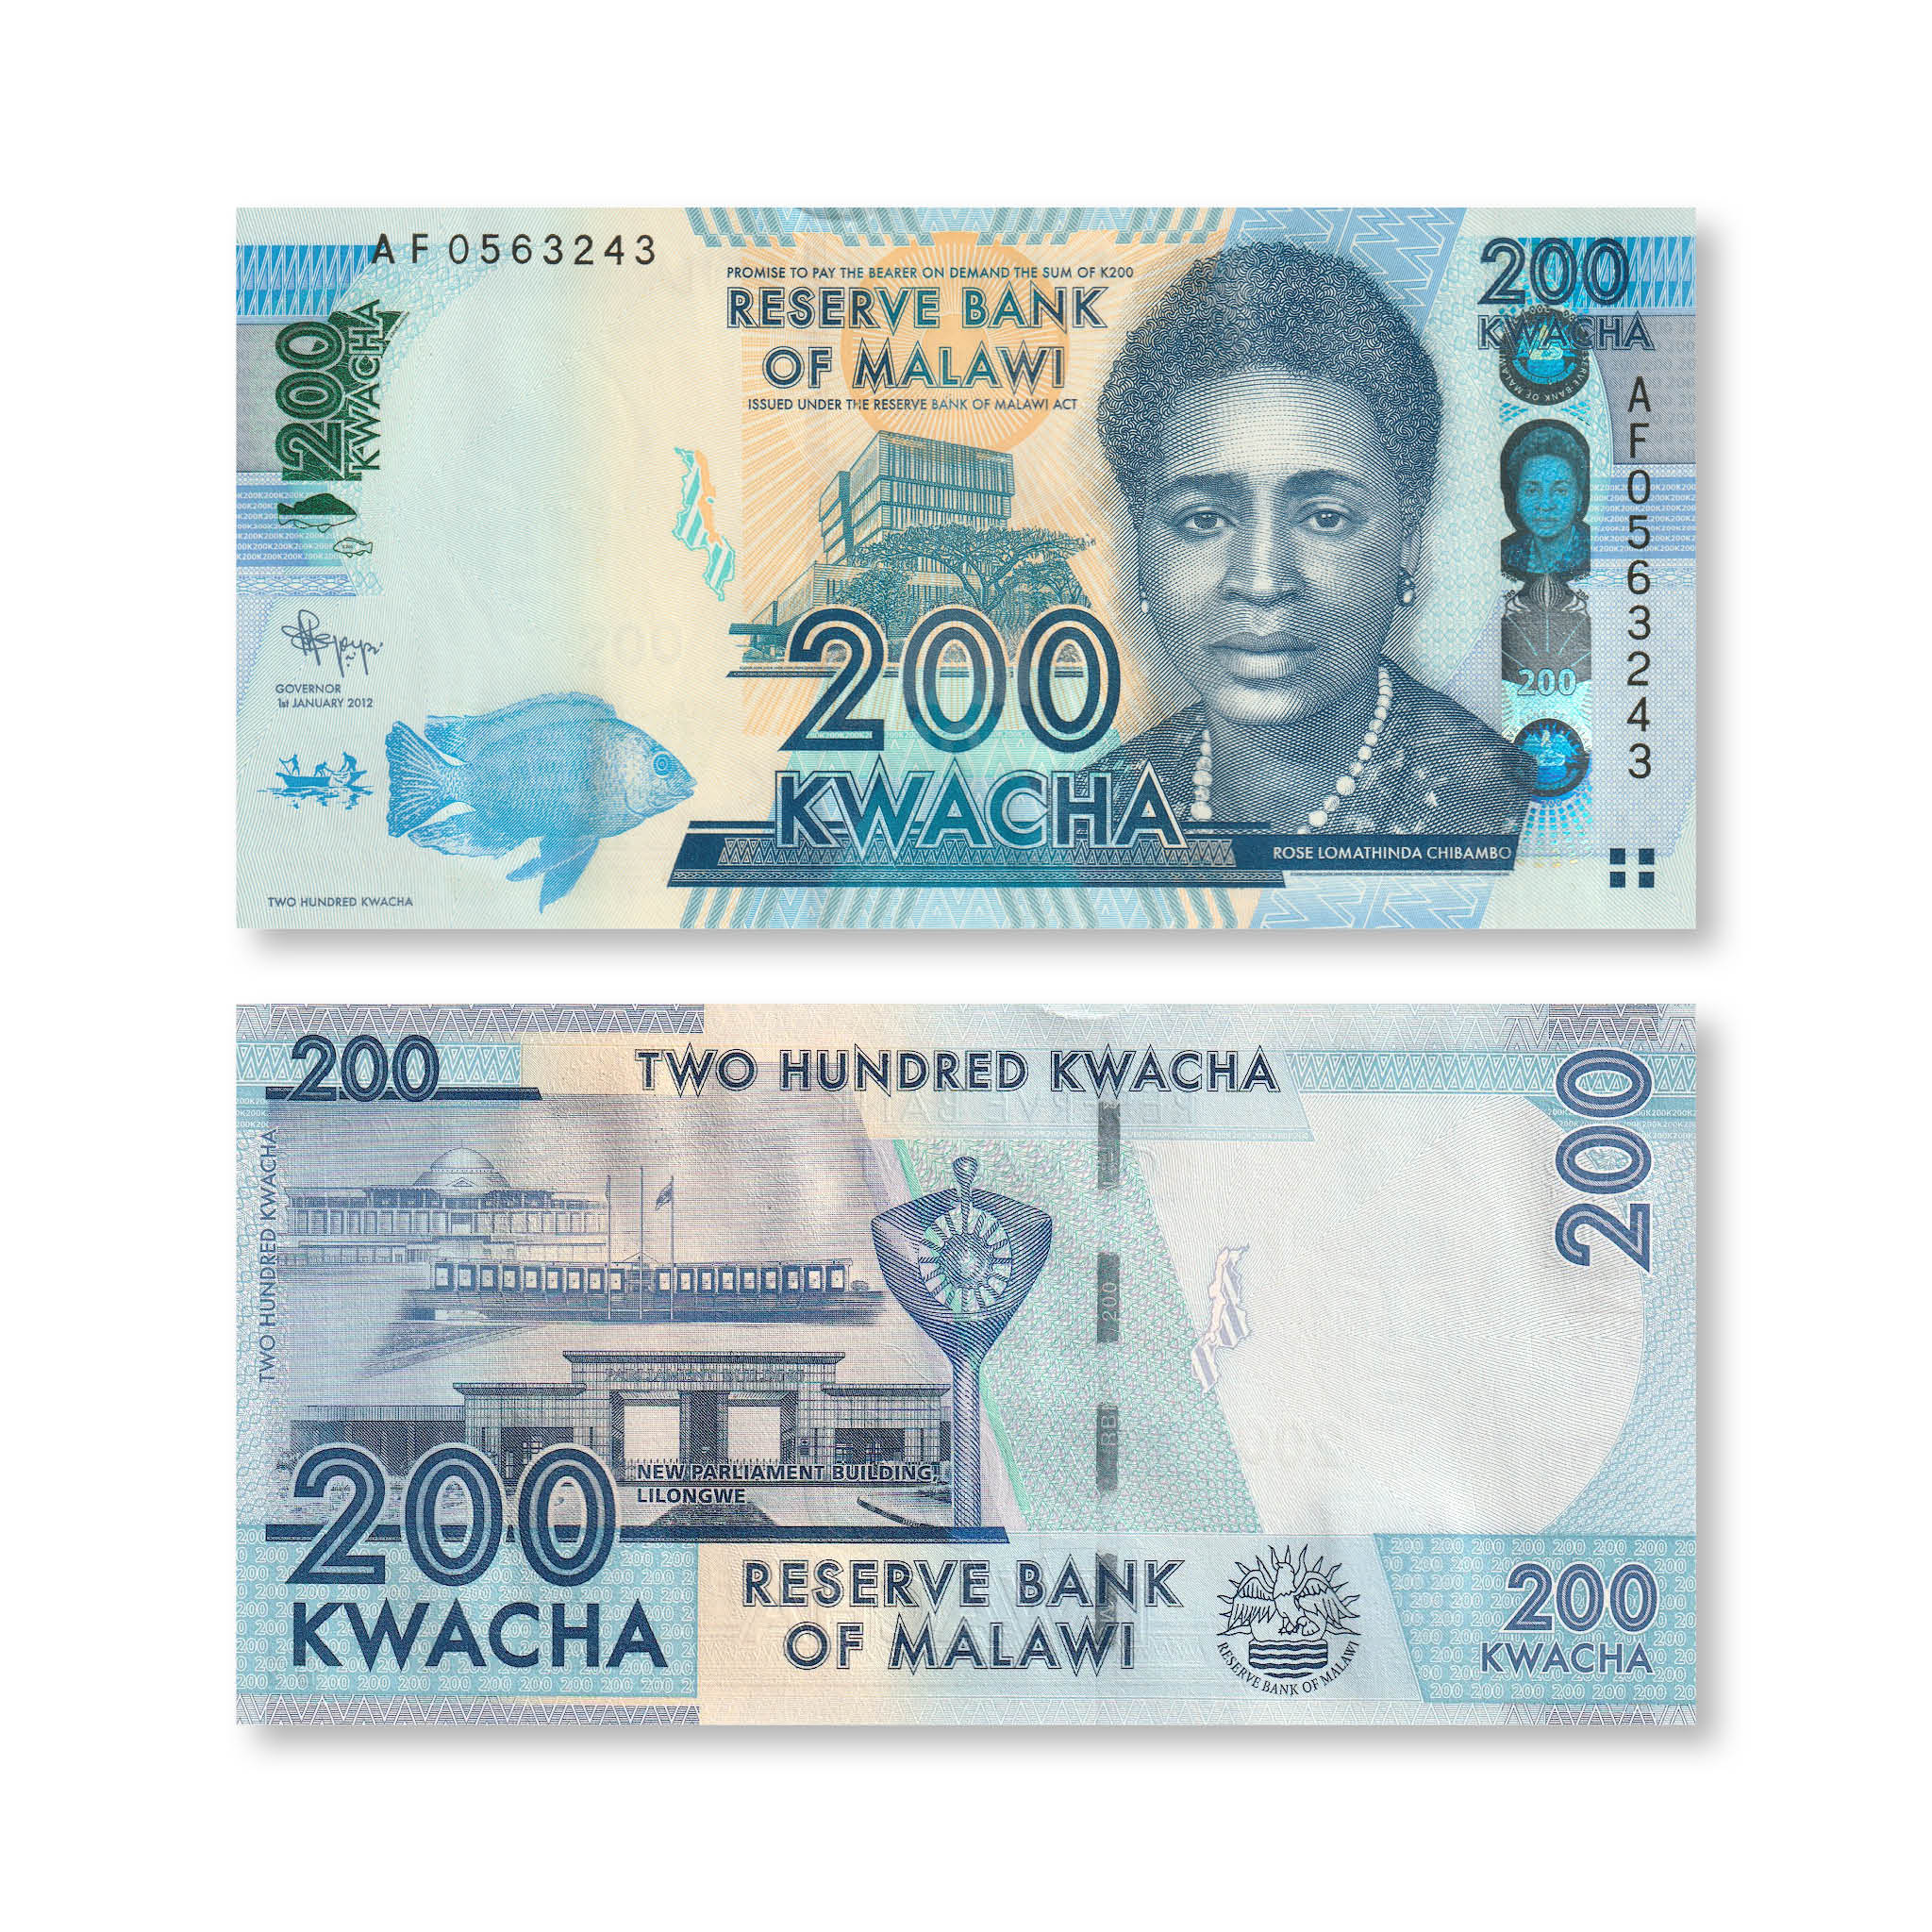 Malawi 200 Kwacha, 2012, B153a, P60a, UNC - Robert's World Money - World Banknotes